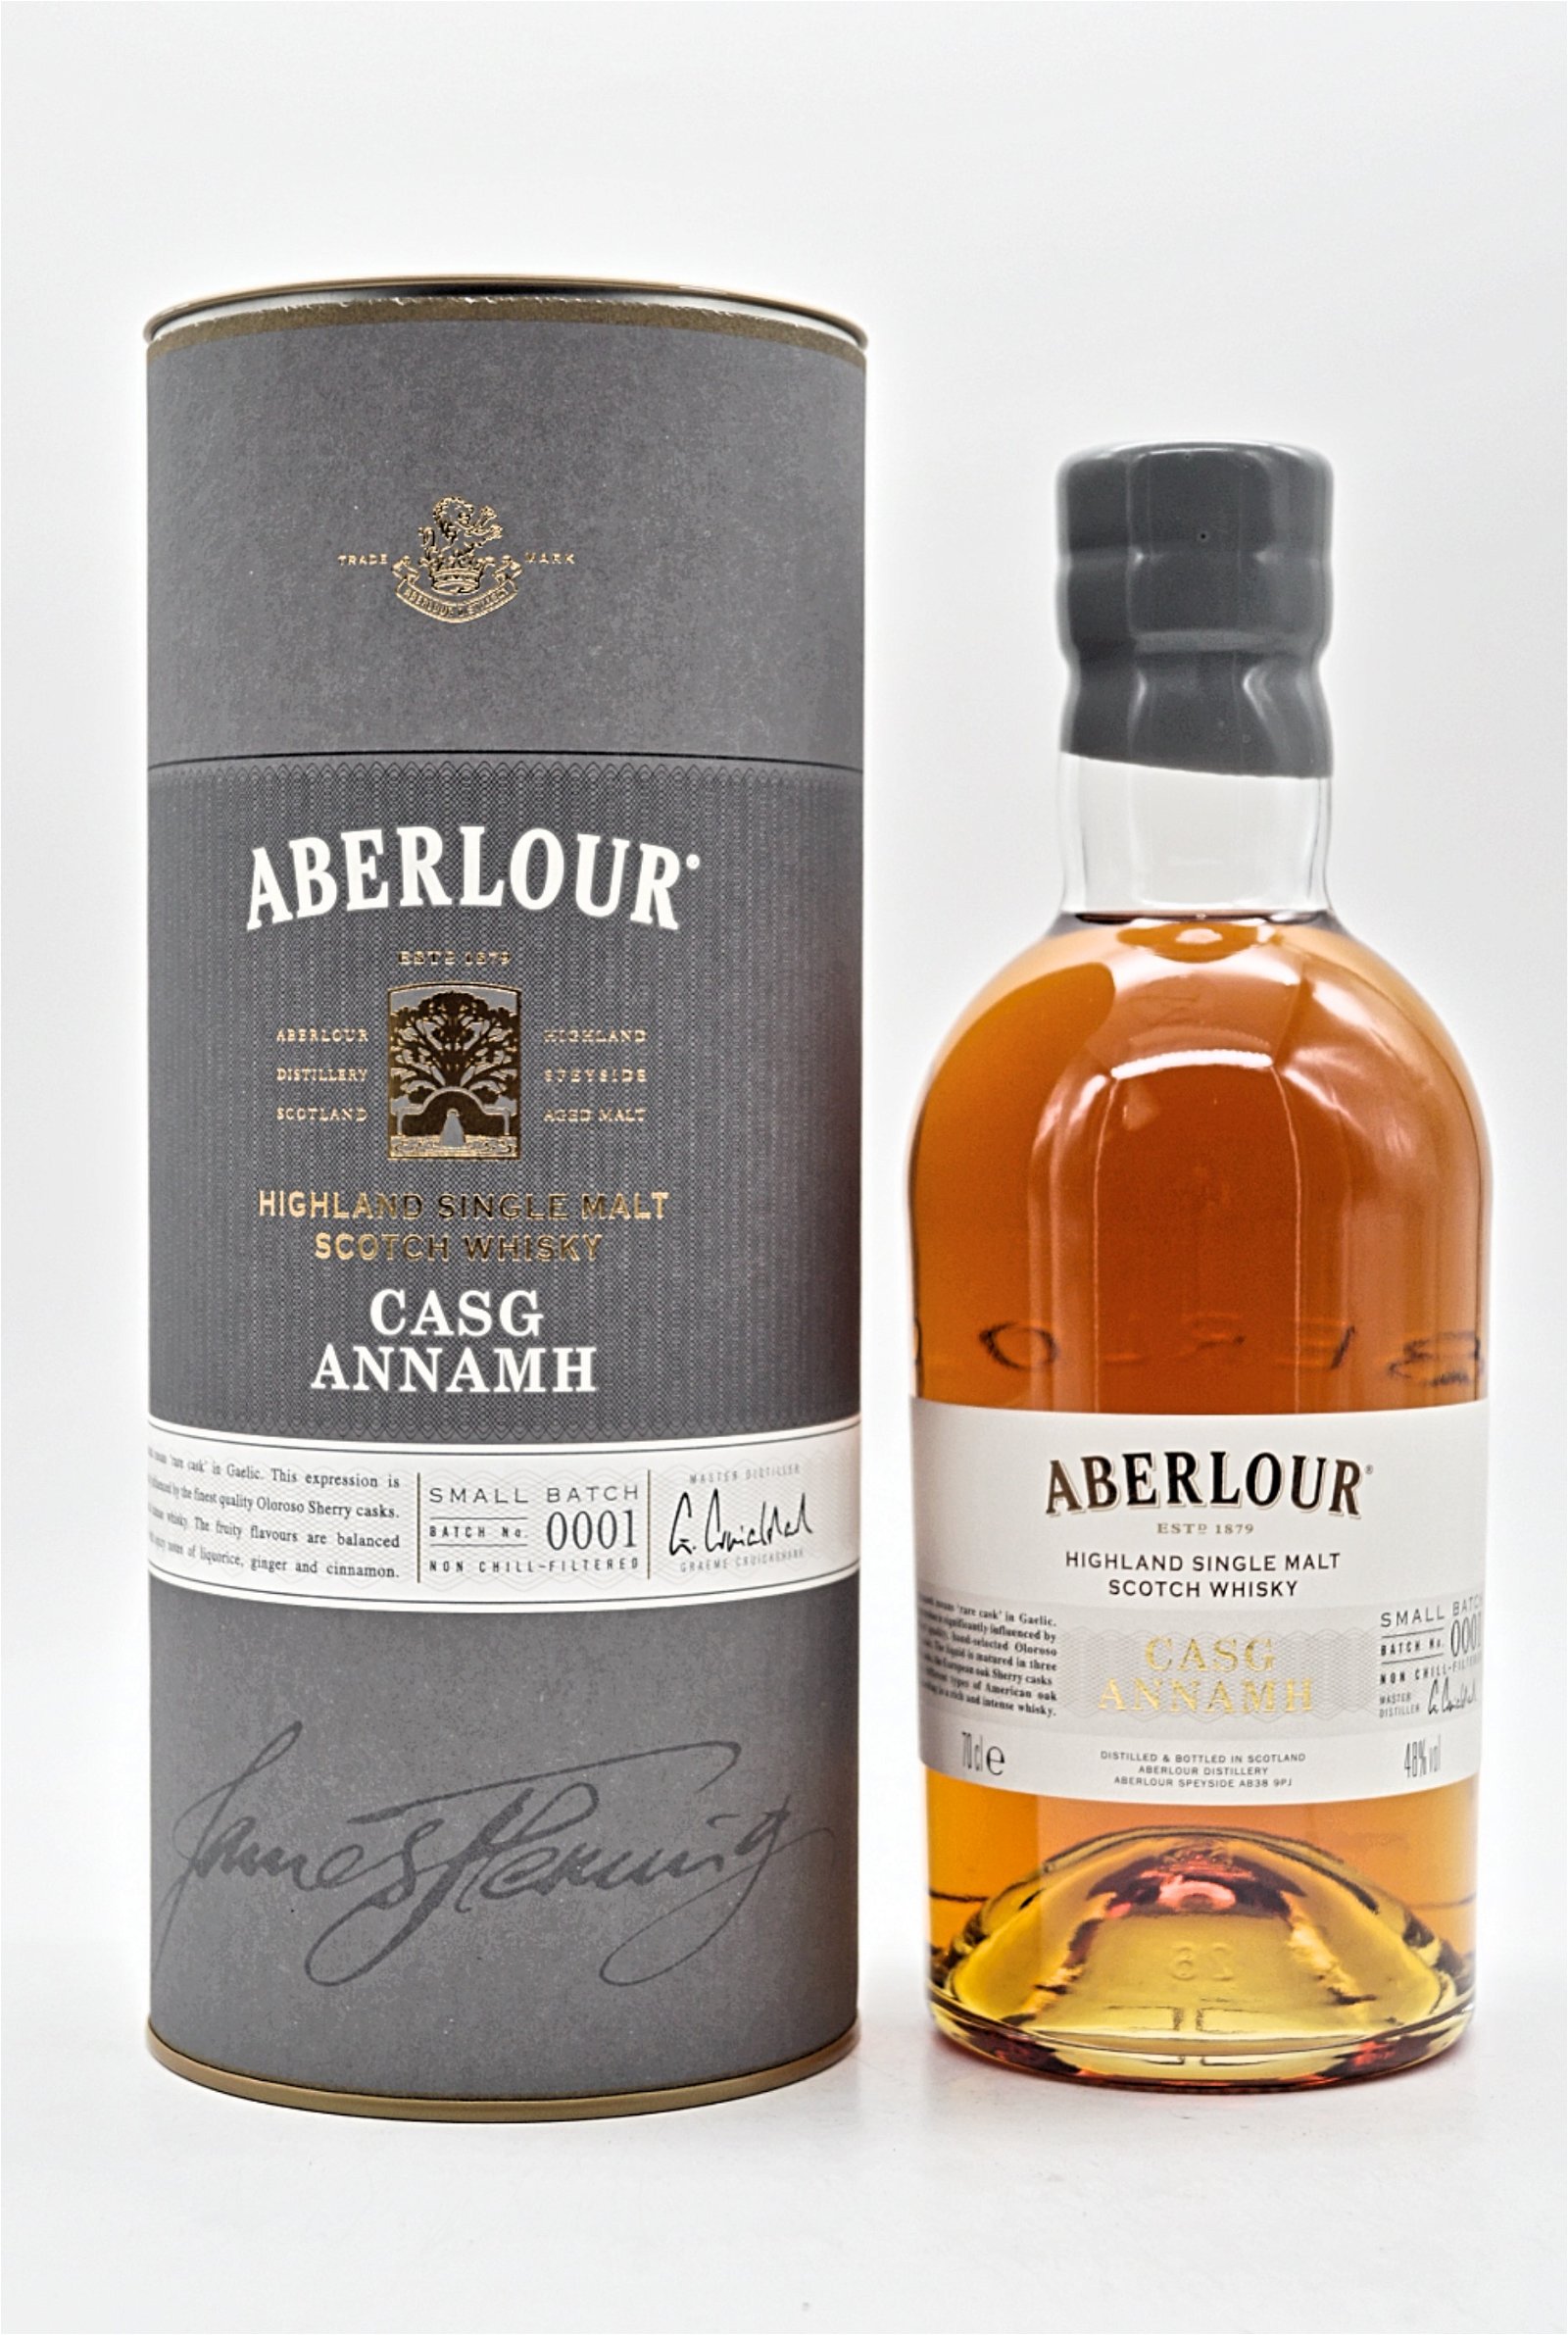 Aberlour Casg Annamh Batch 0001 Highland Single Malt Scotch Whisky